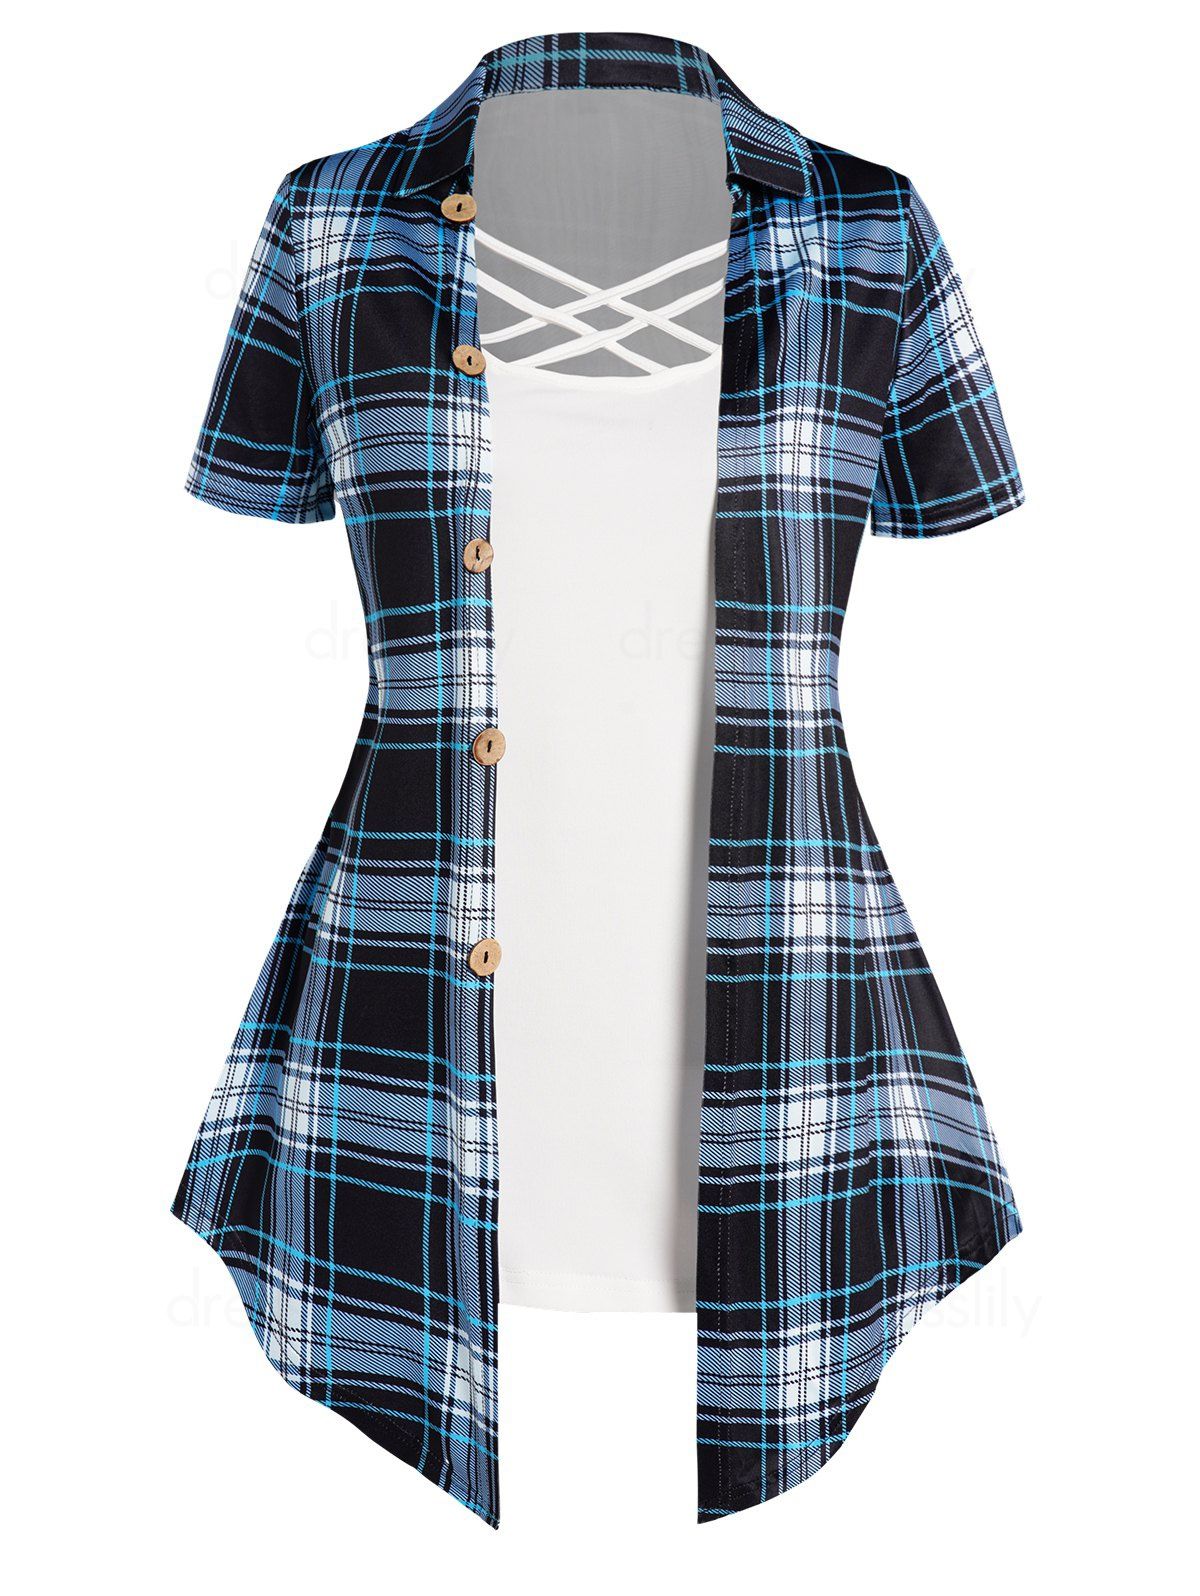 Casual Faux Twinset T Shirt Crisscross Plaid Print Mock Button Turn Down Collar Summer Tee - LIGHT BLUE XXXL